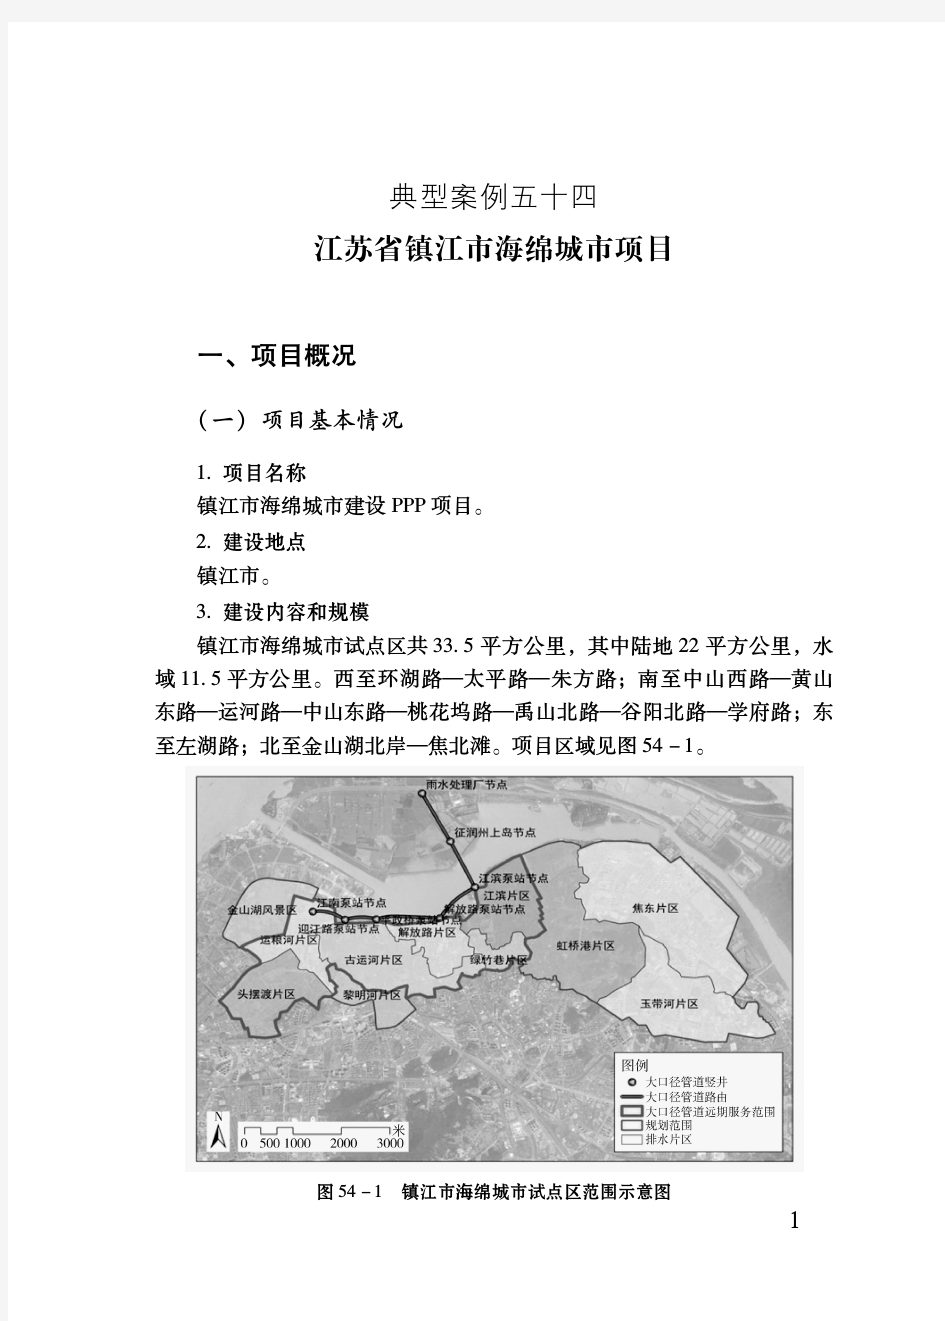 江苏省镇江市海绵城市项目——PPP项目典型案例(最新)